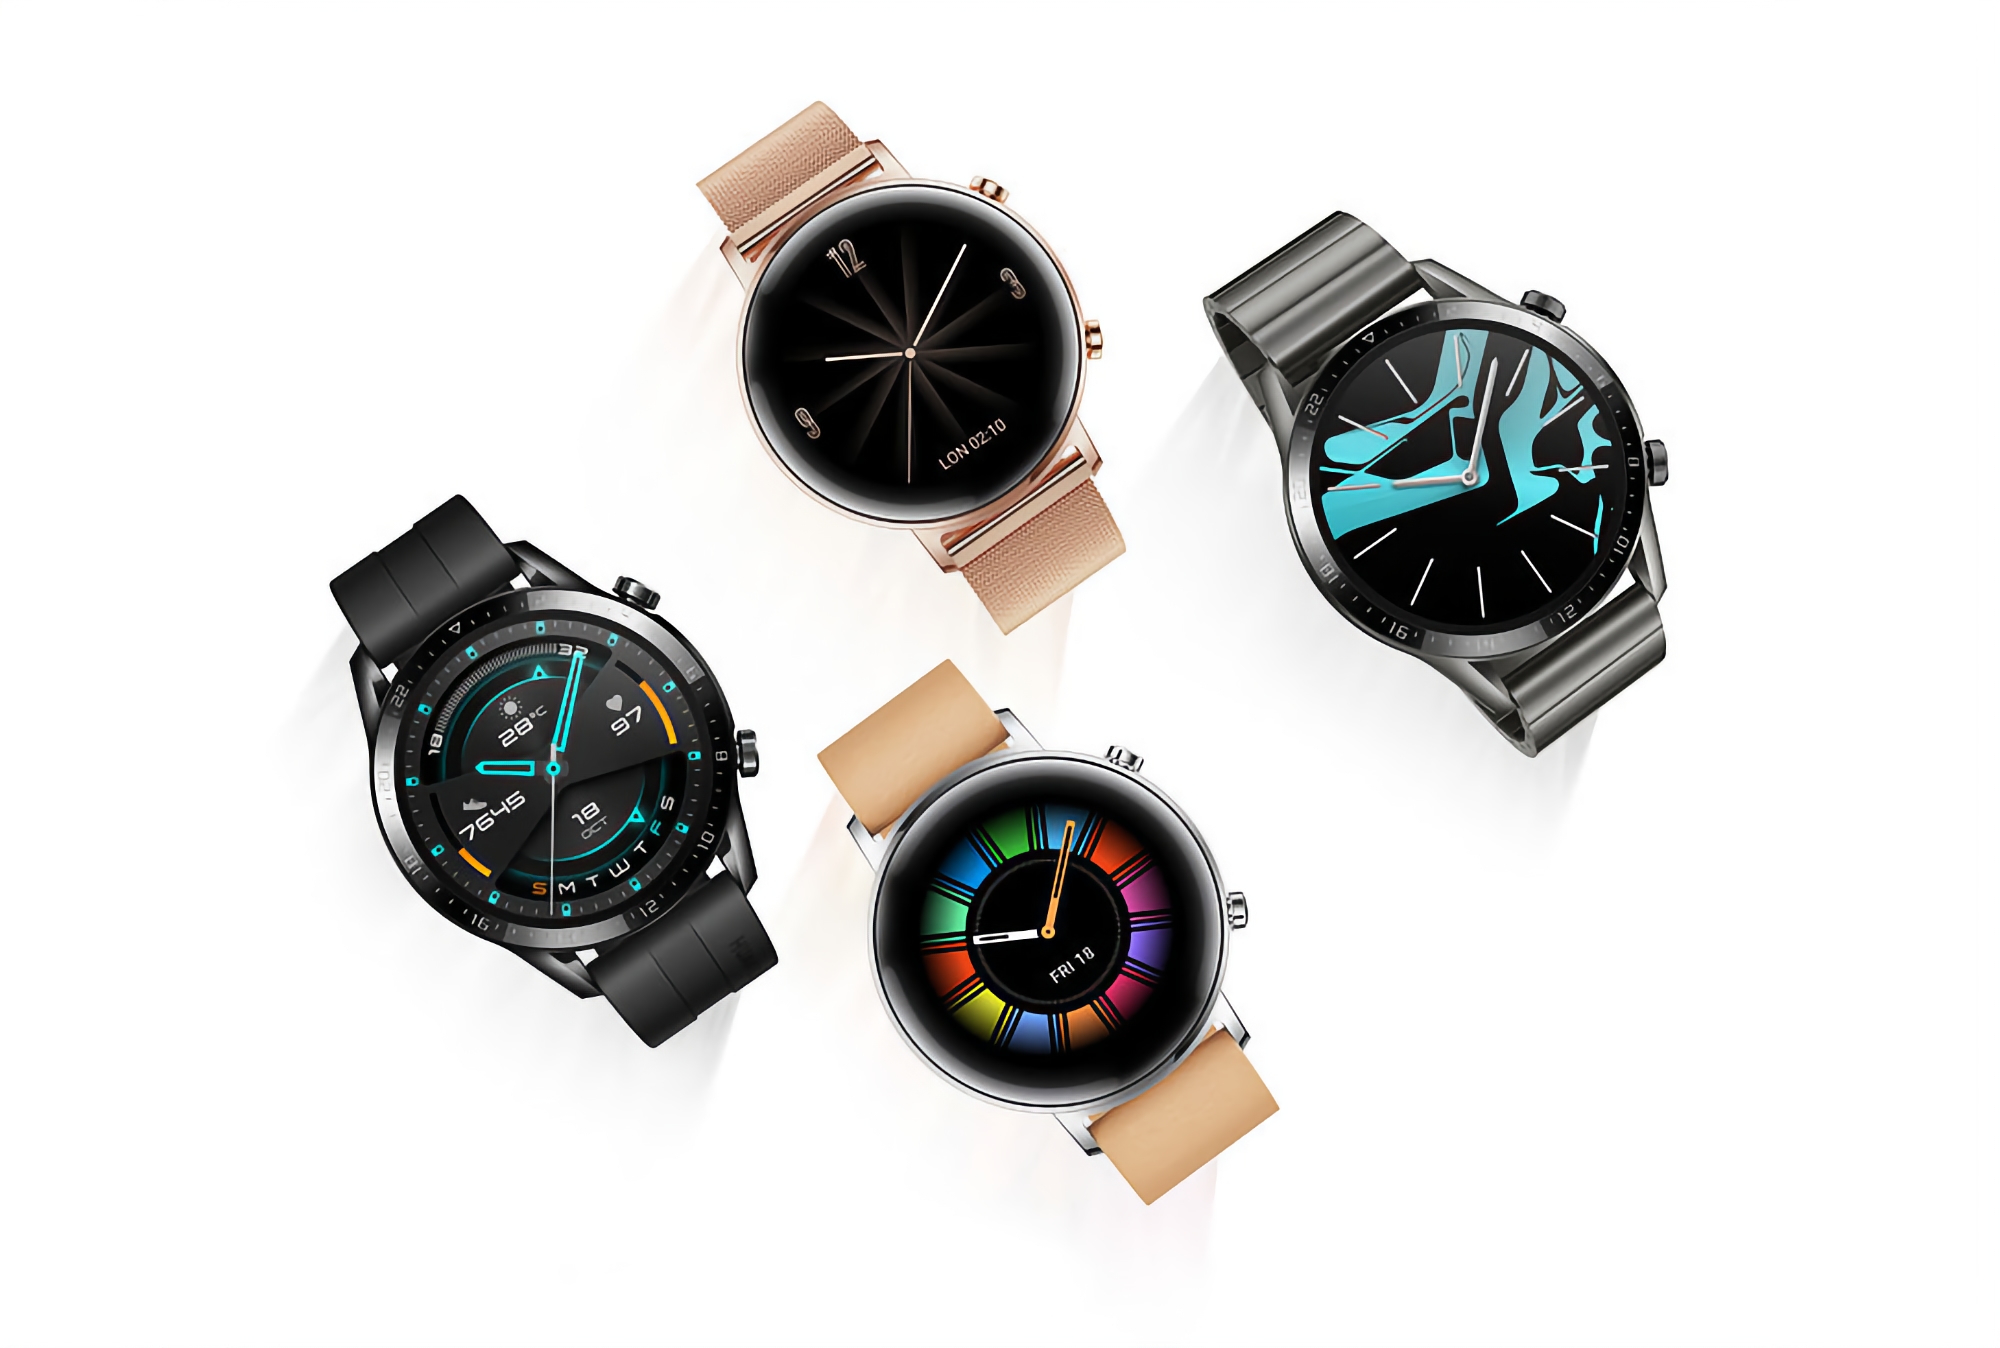 Inteligentny zegarek Huawei Watch GT 2 otrzymał aktualizację 11.0.16.10: powiemy Ci, co nowego i kiedy możesz się spodziewać OTA